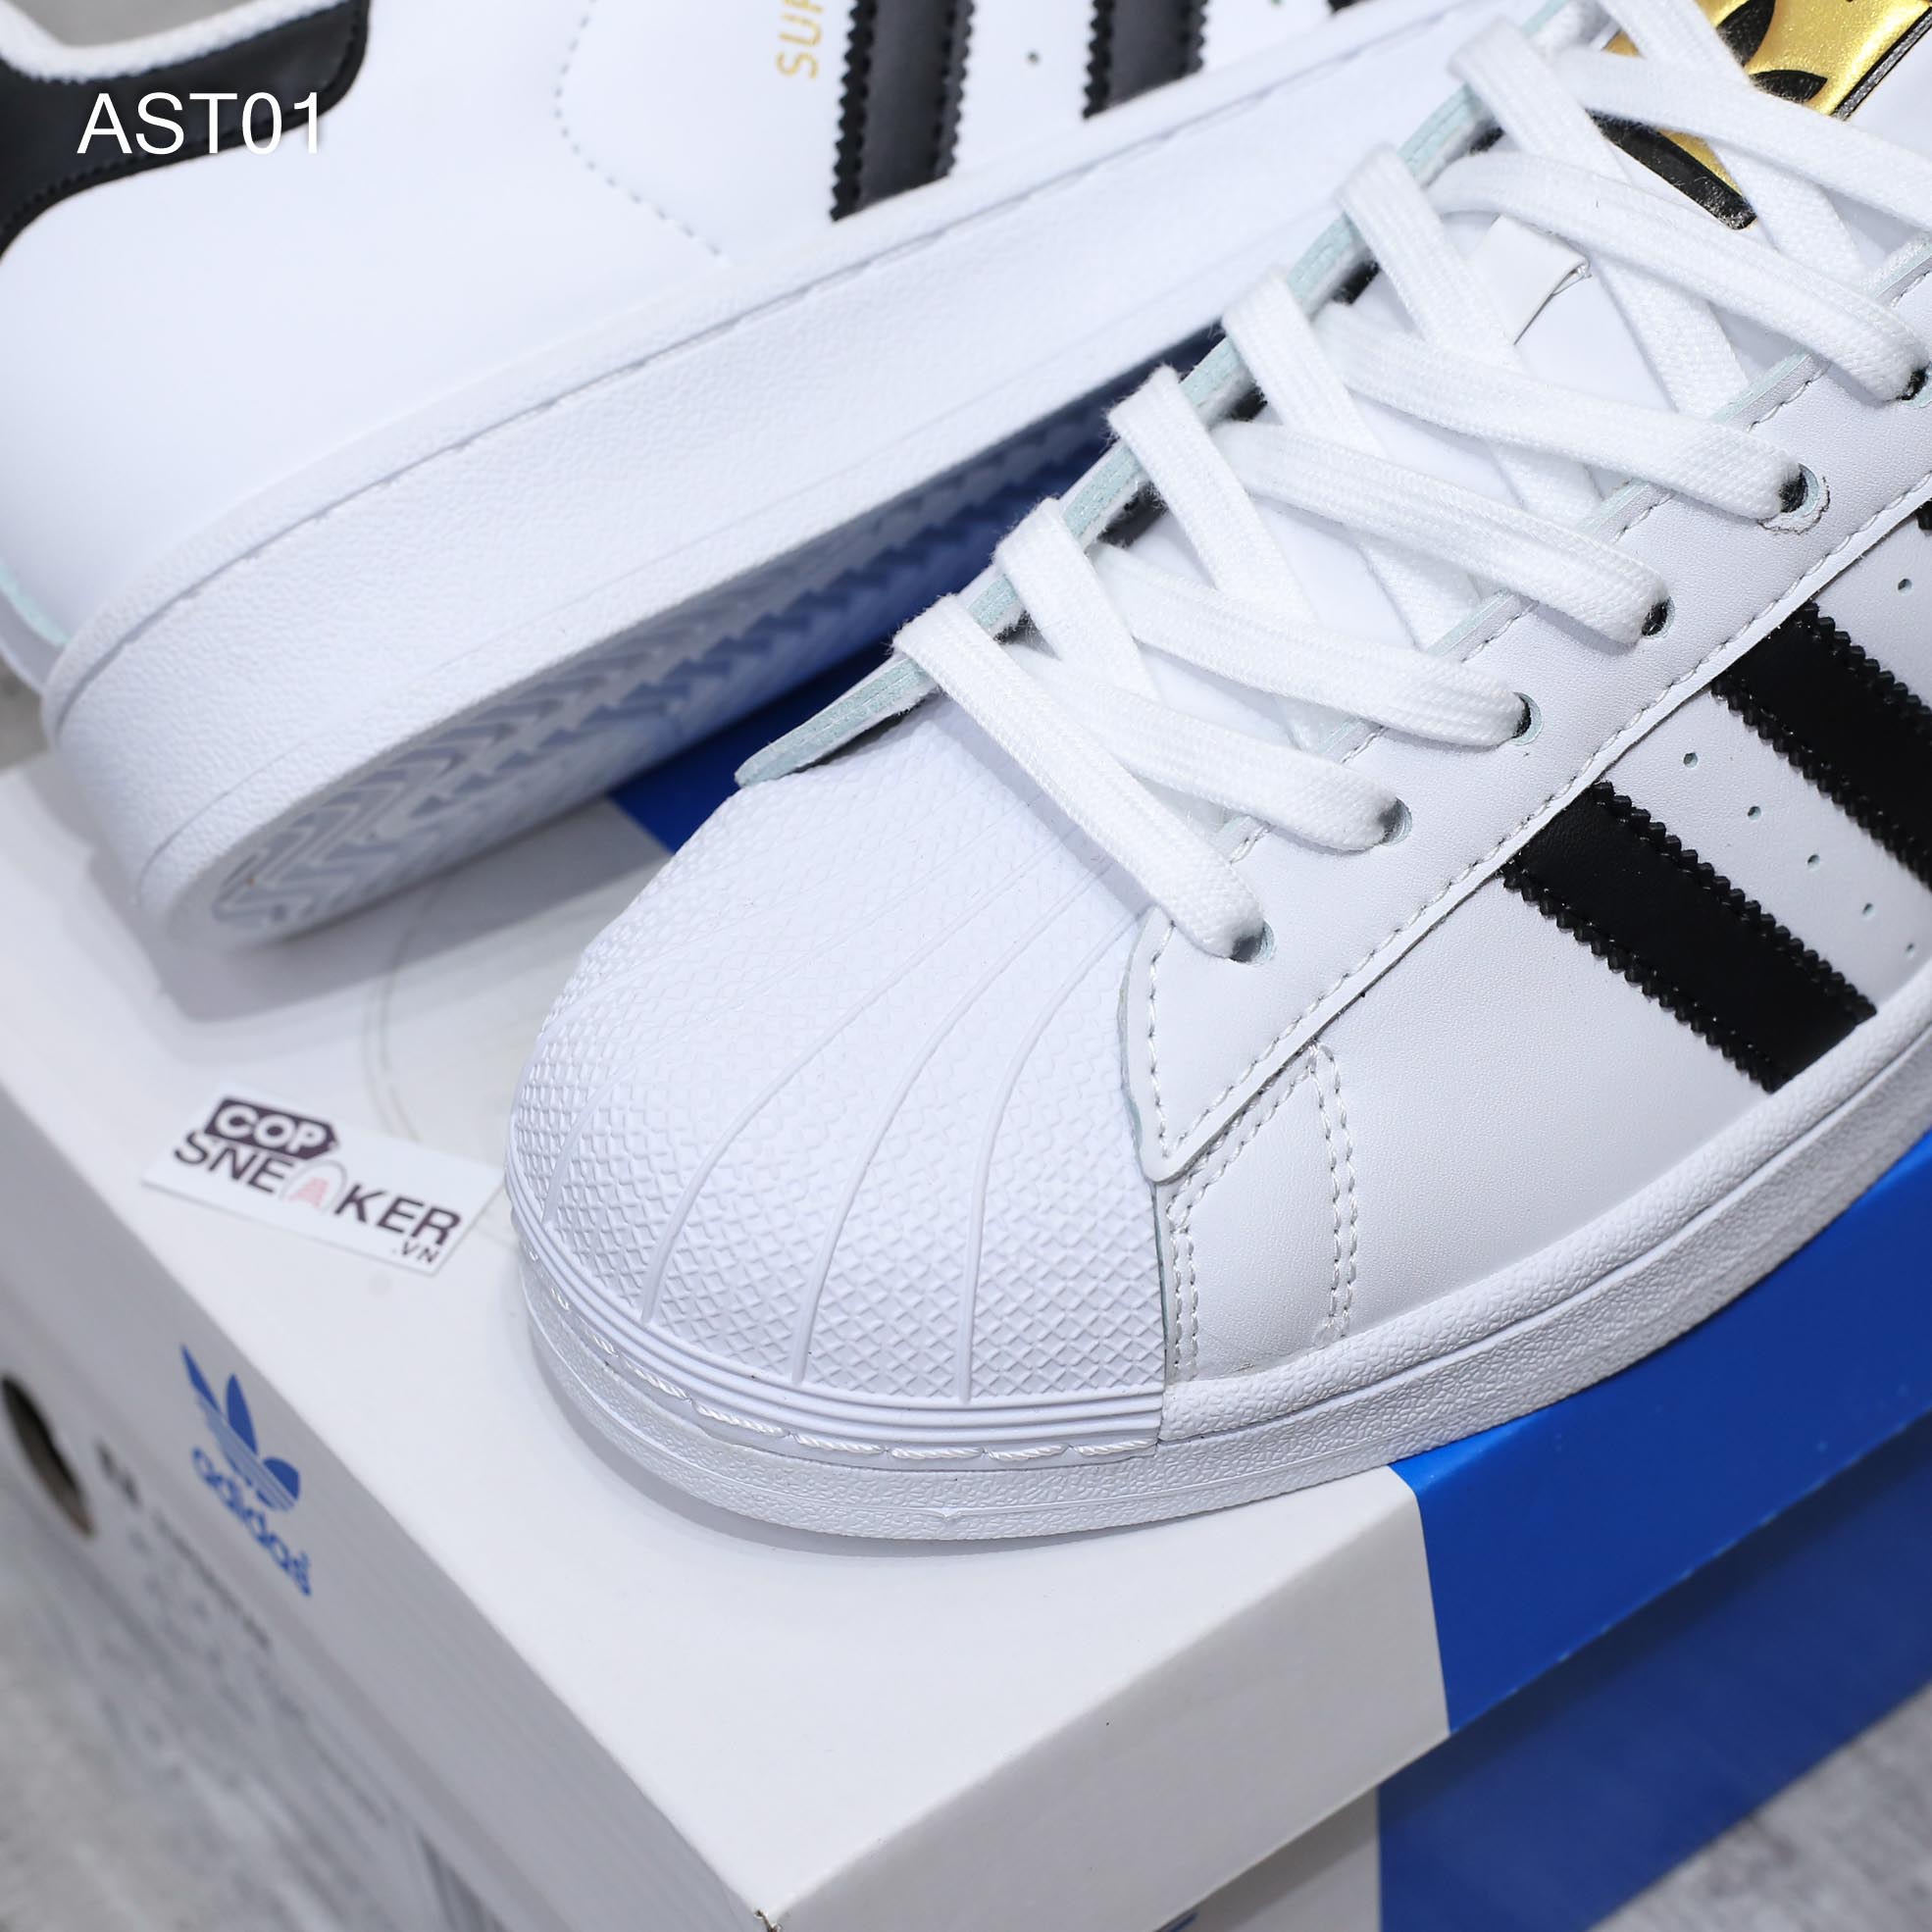 Giày Adidas Sò Superstar trắng sọc đen Rep 1:1